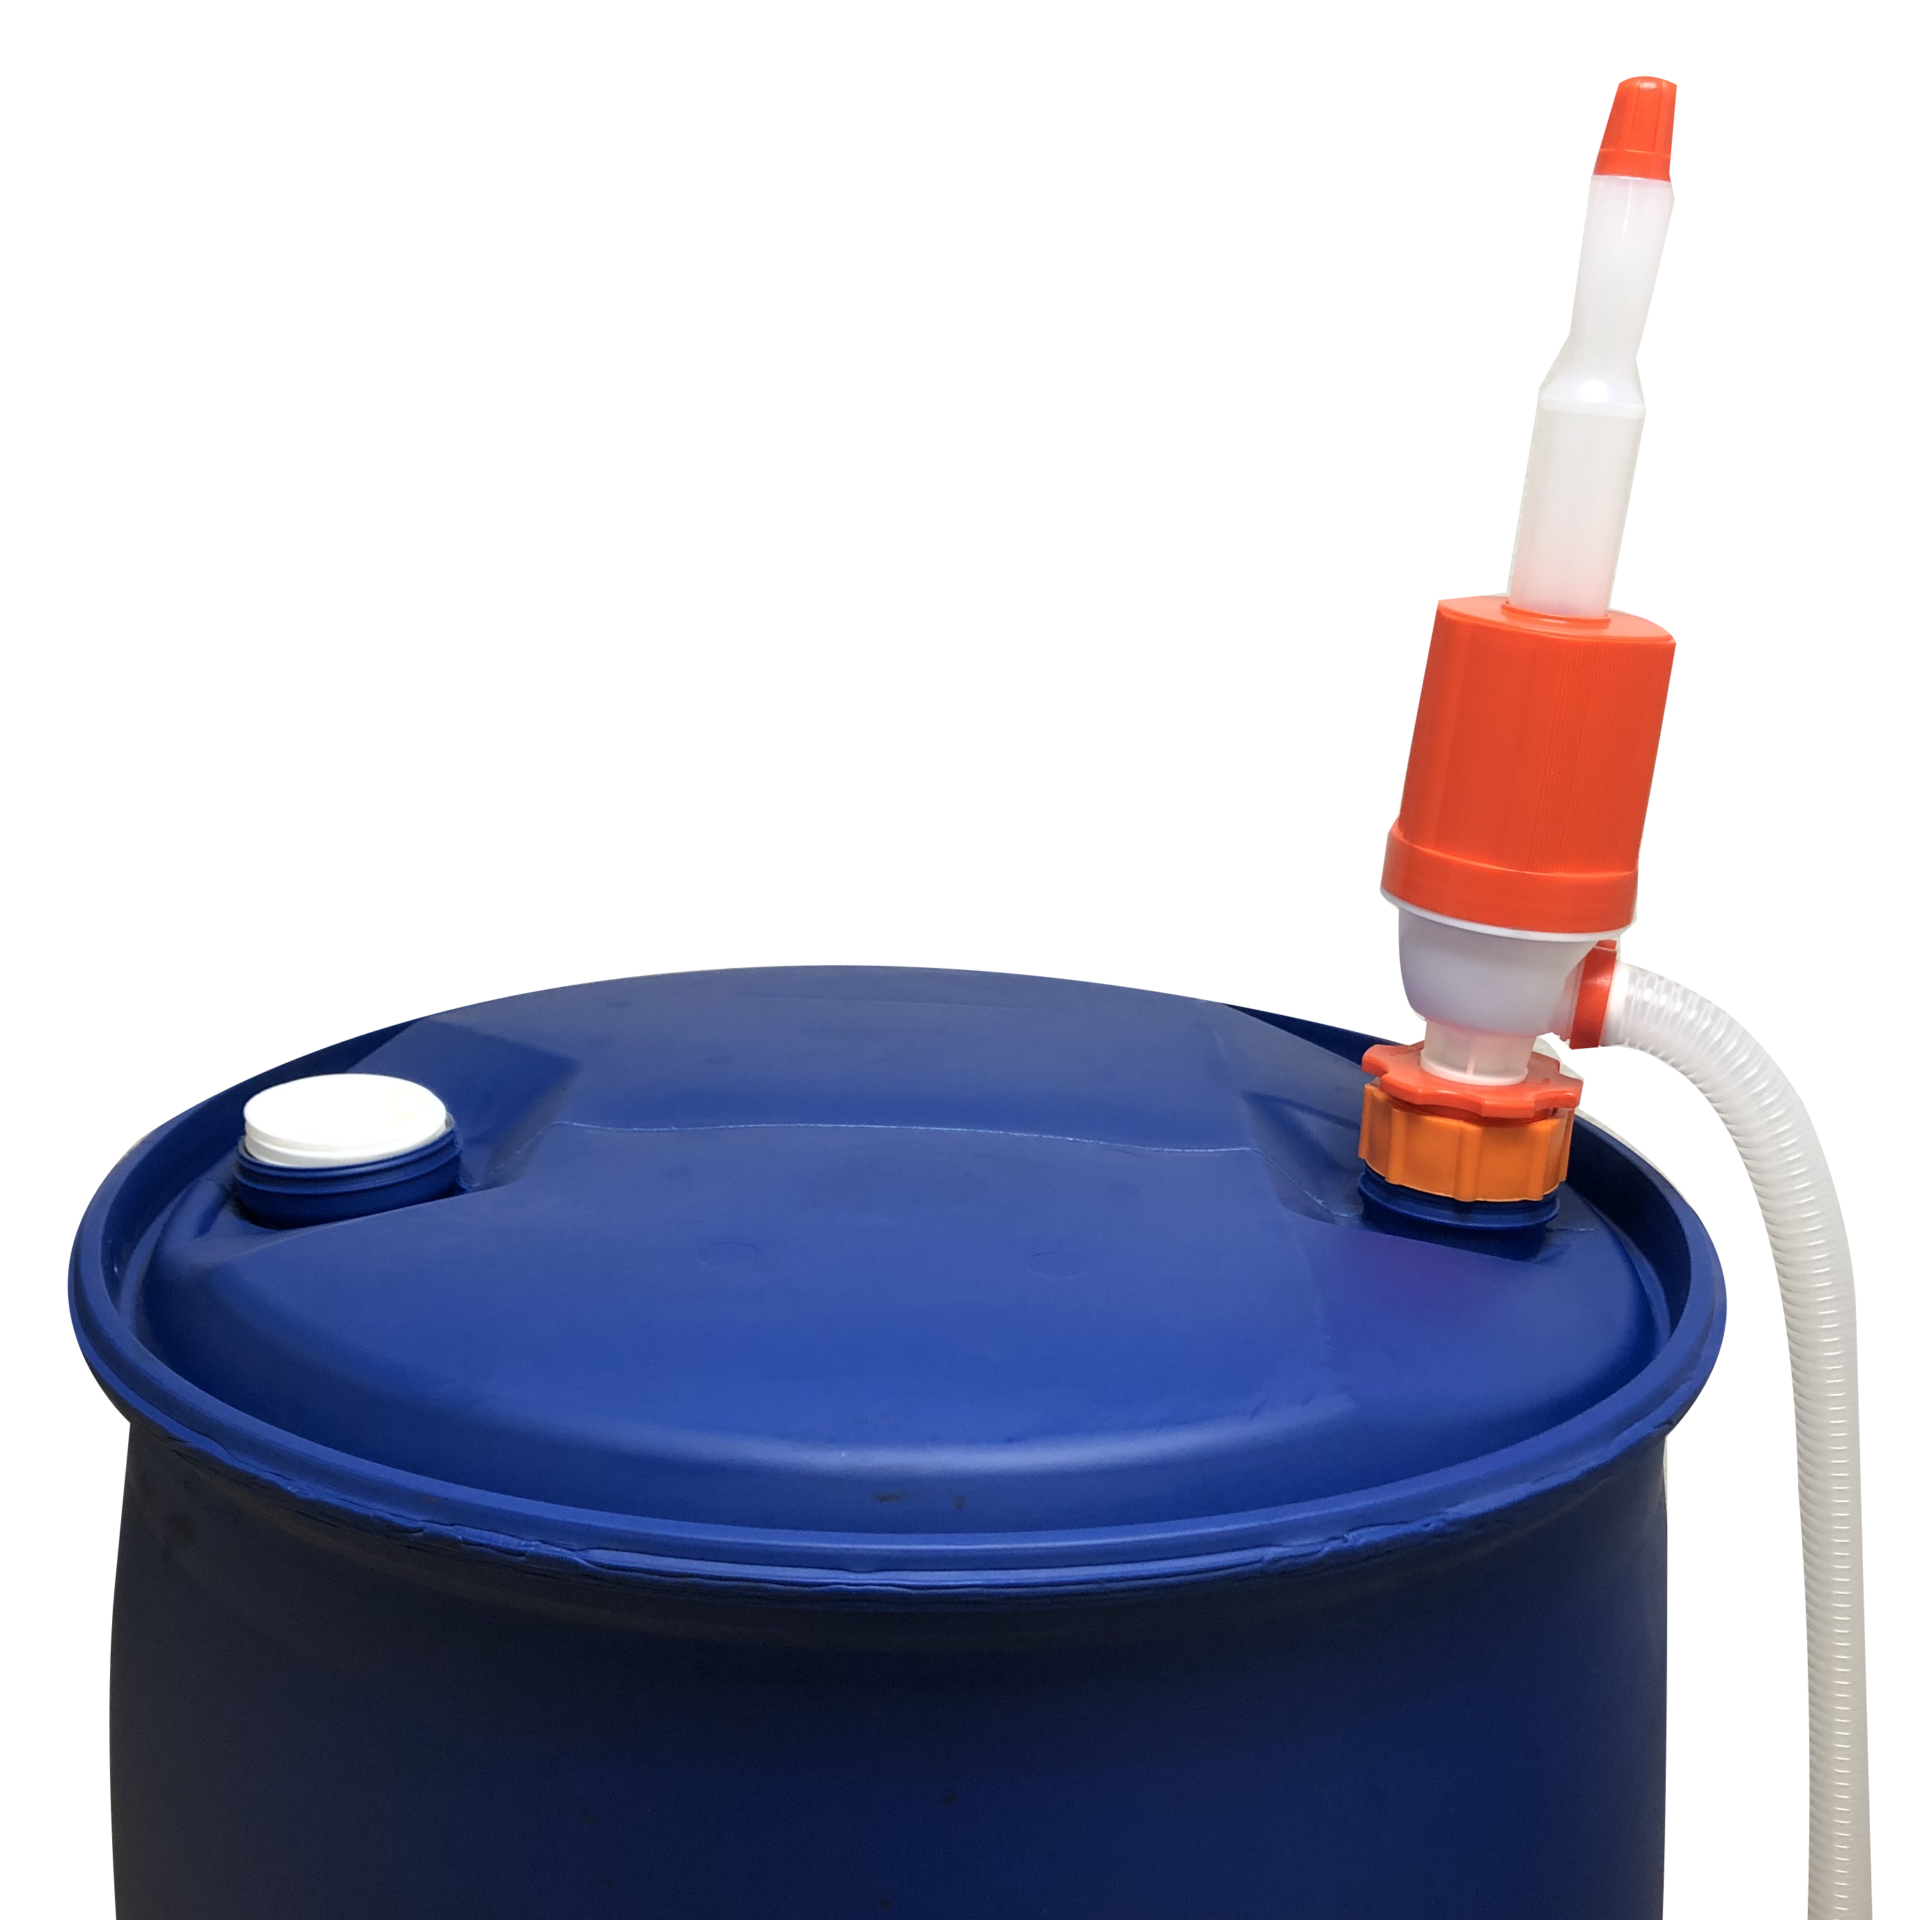 Pompe siphon manuelle - Pour transfert de liquide en plastique - 41 cm